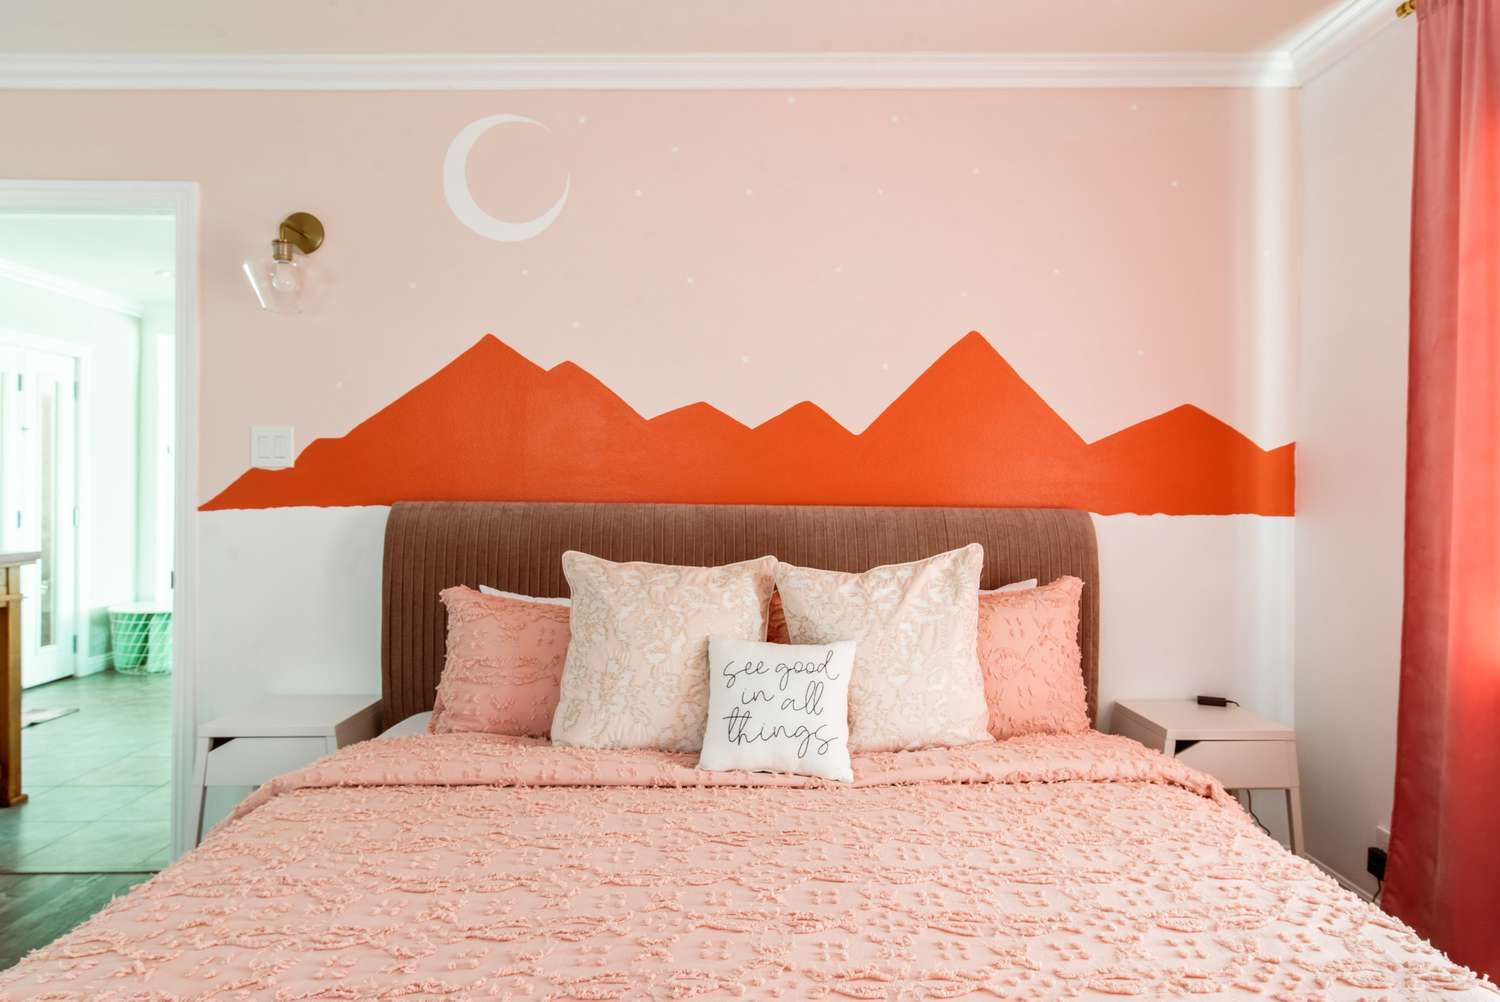 Phòng ngủ màu hồng mang lại cảm giác ấm áp, ngọt ngào